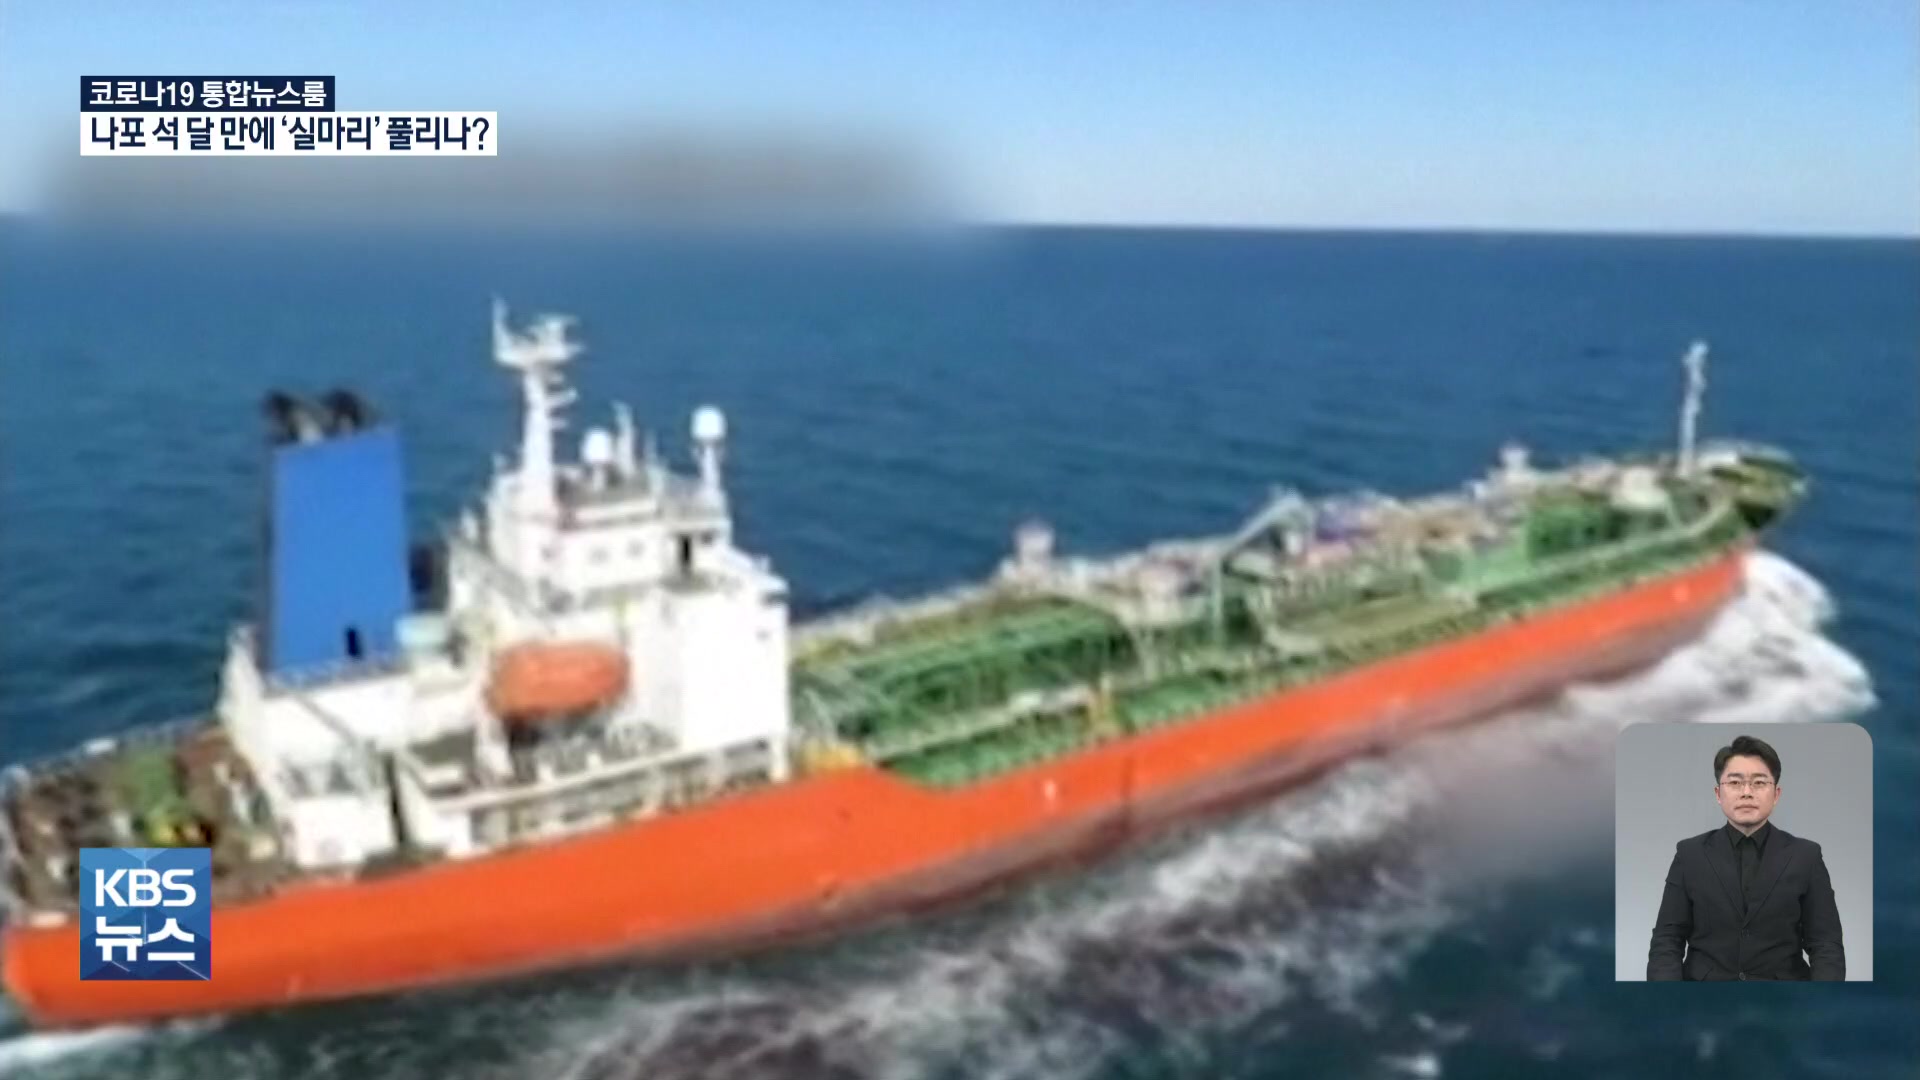 이란 “선박 억류문제 긍정적 접근”…韓 “조속한 억류해제 기대”